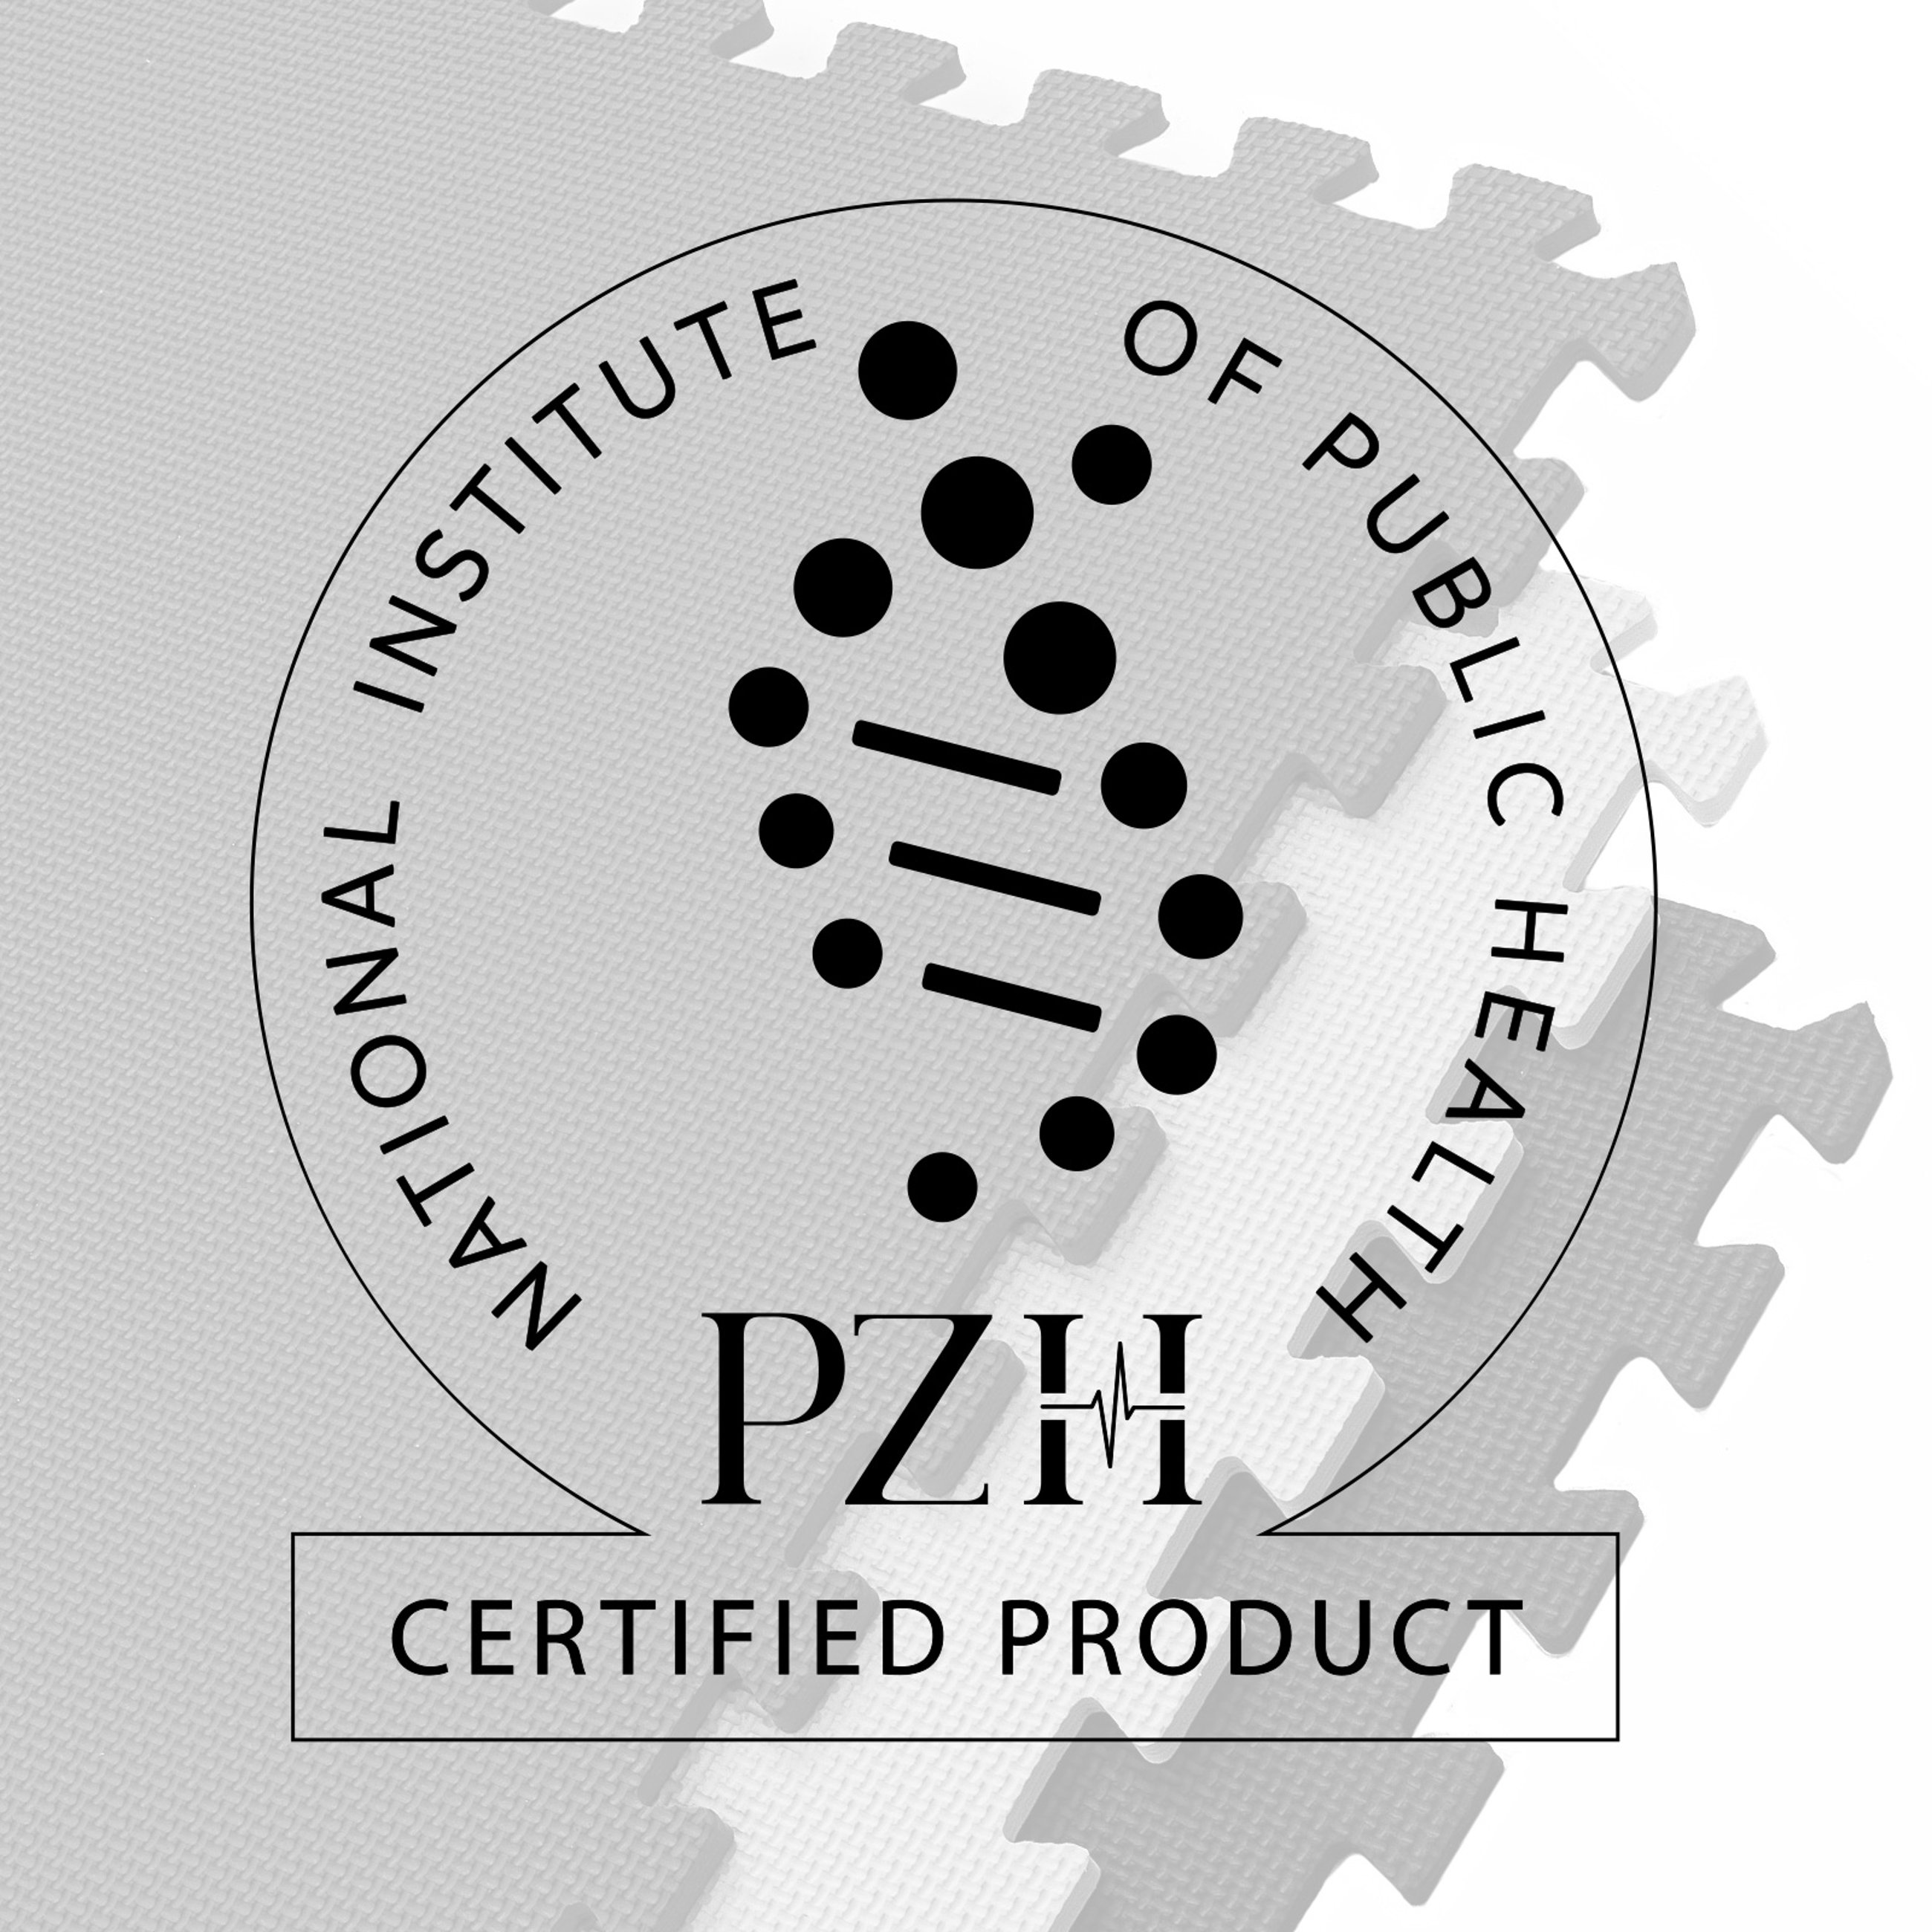 Unsere Puzzlematten HS-A020PM haben das NIZP PZH Zertifikat